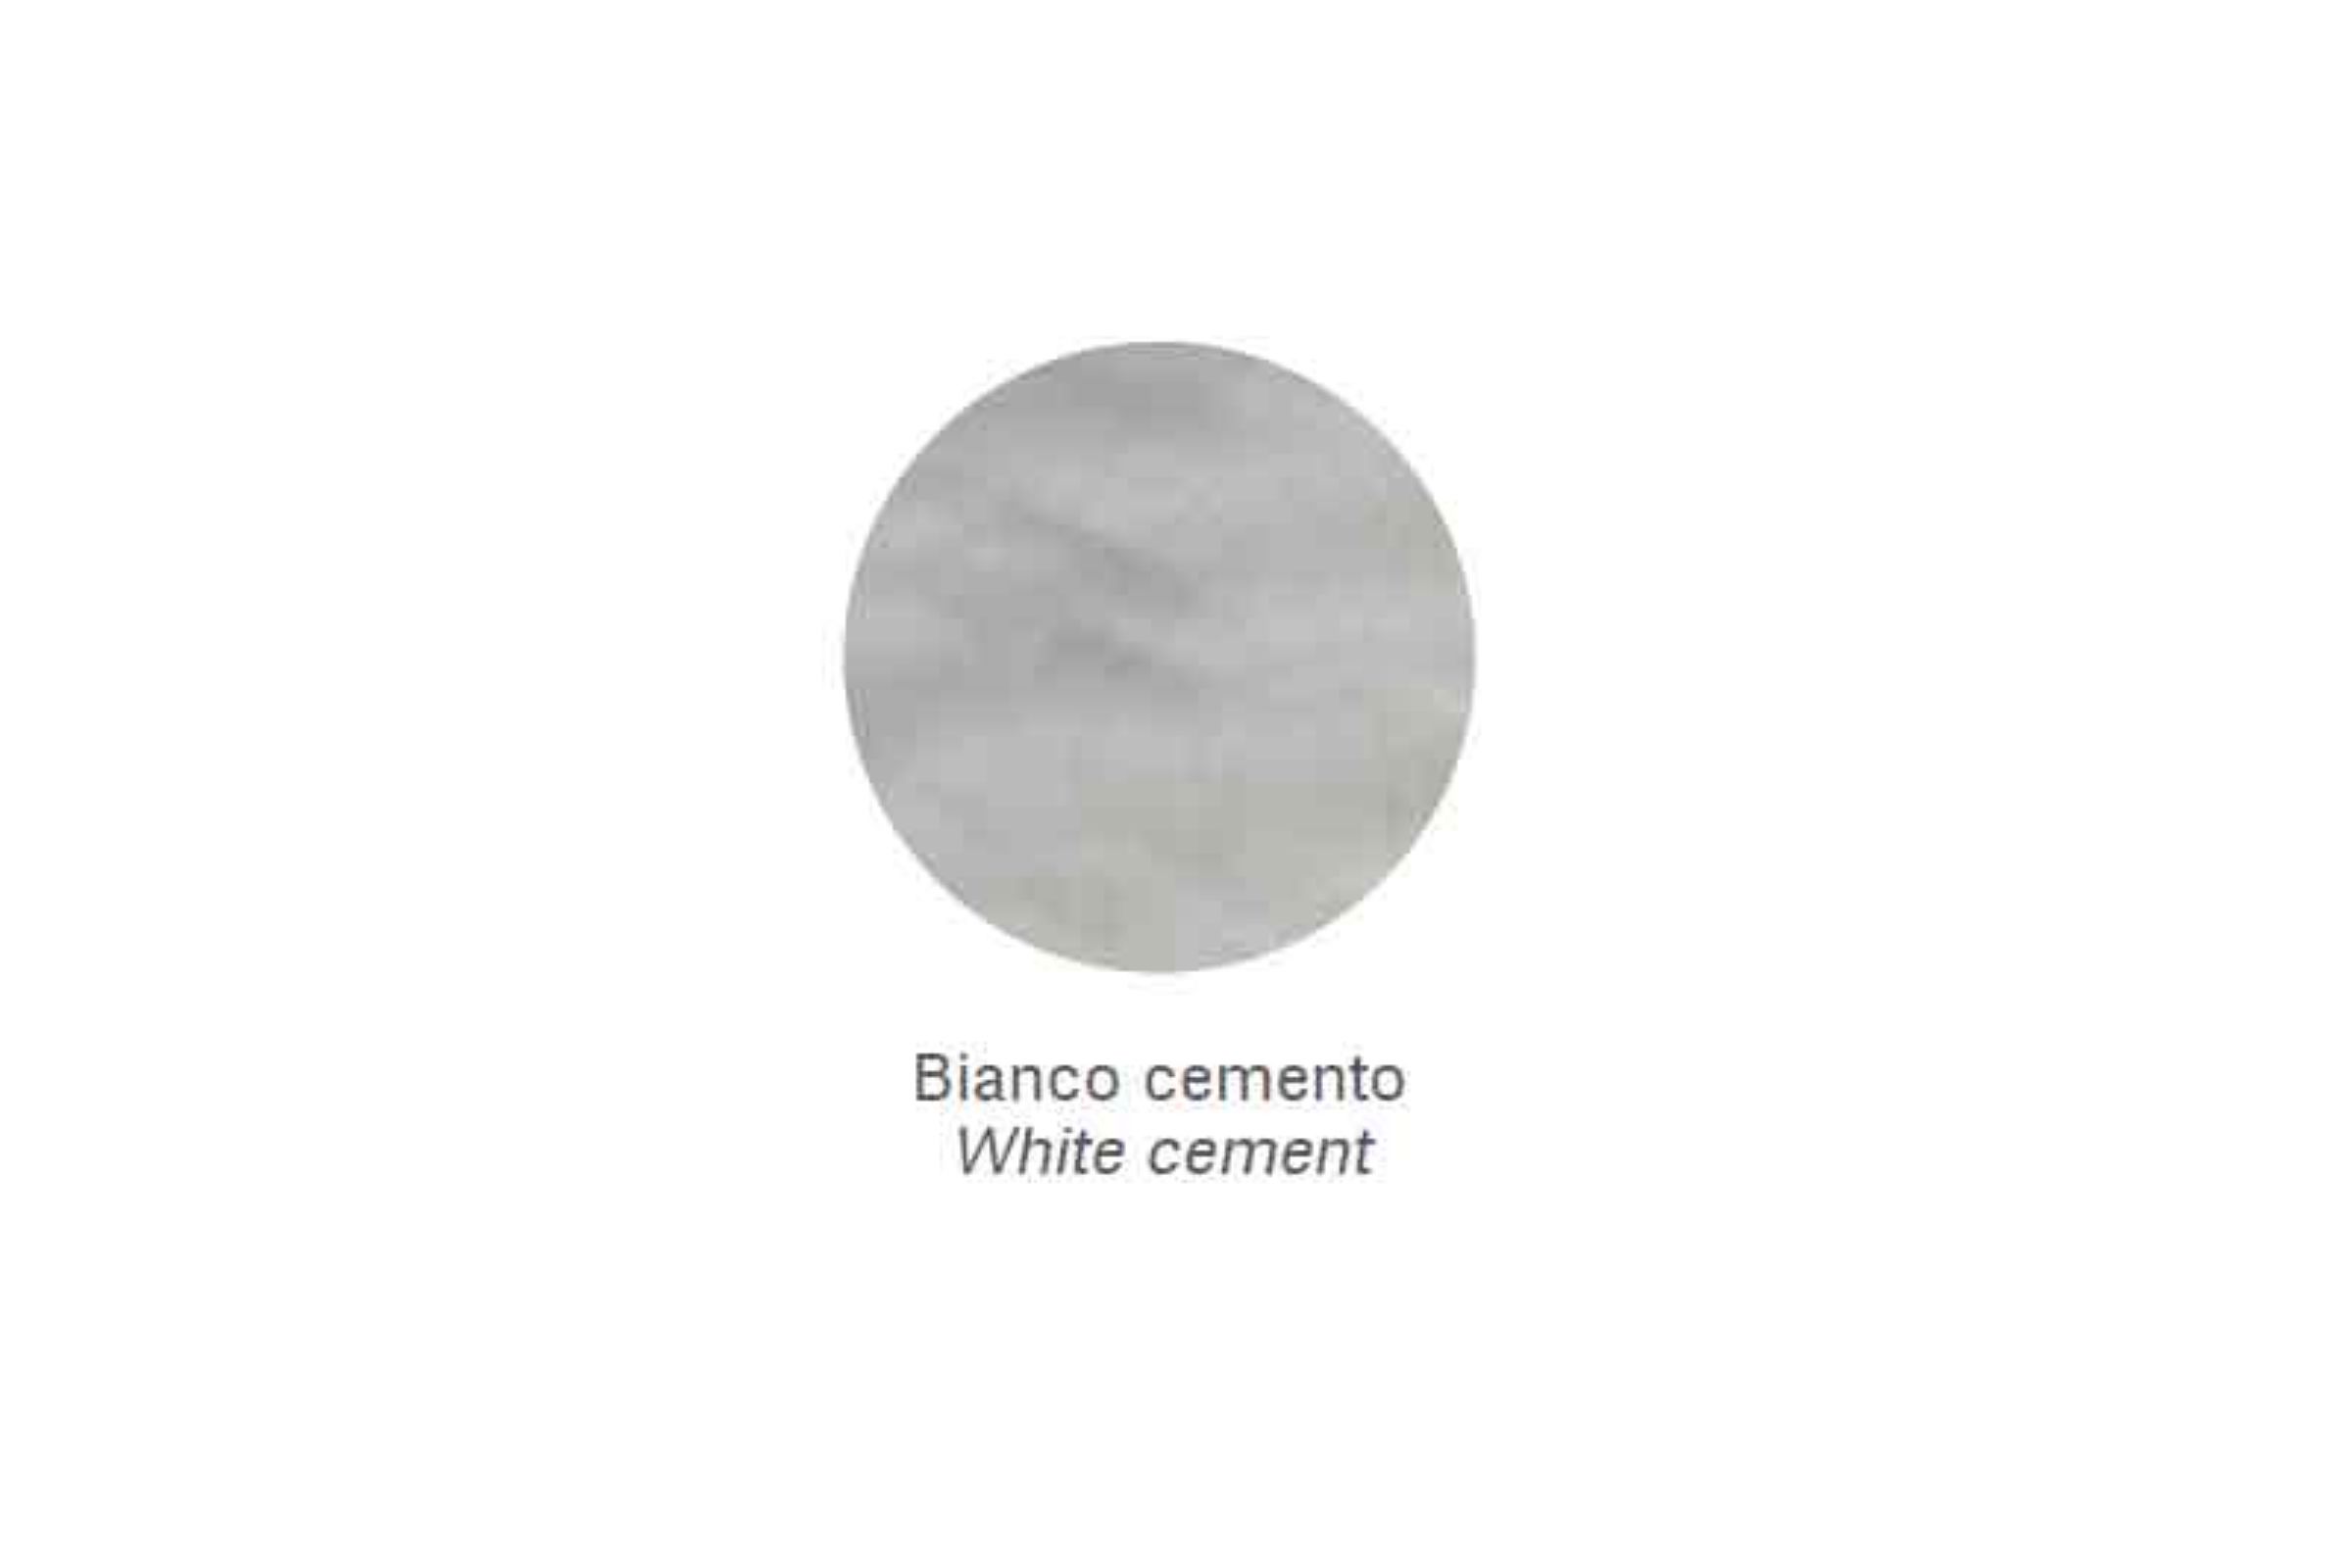 Mensola Zen /45 - Mensola Zen /45 Bianco cemento